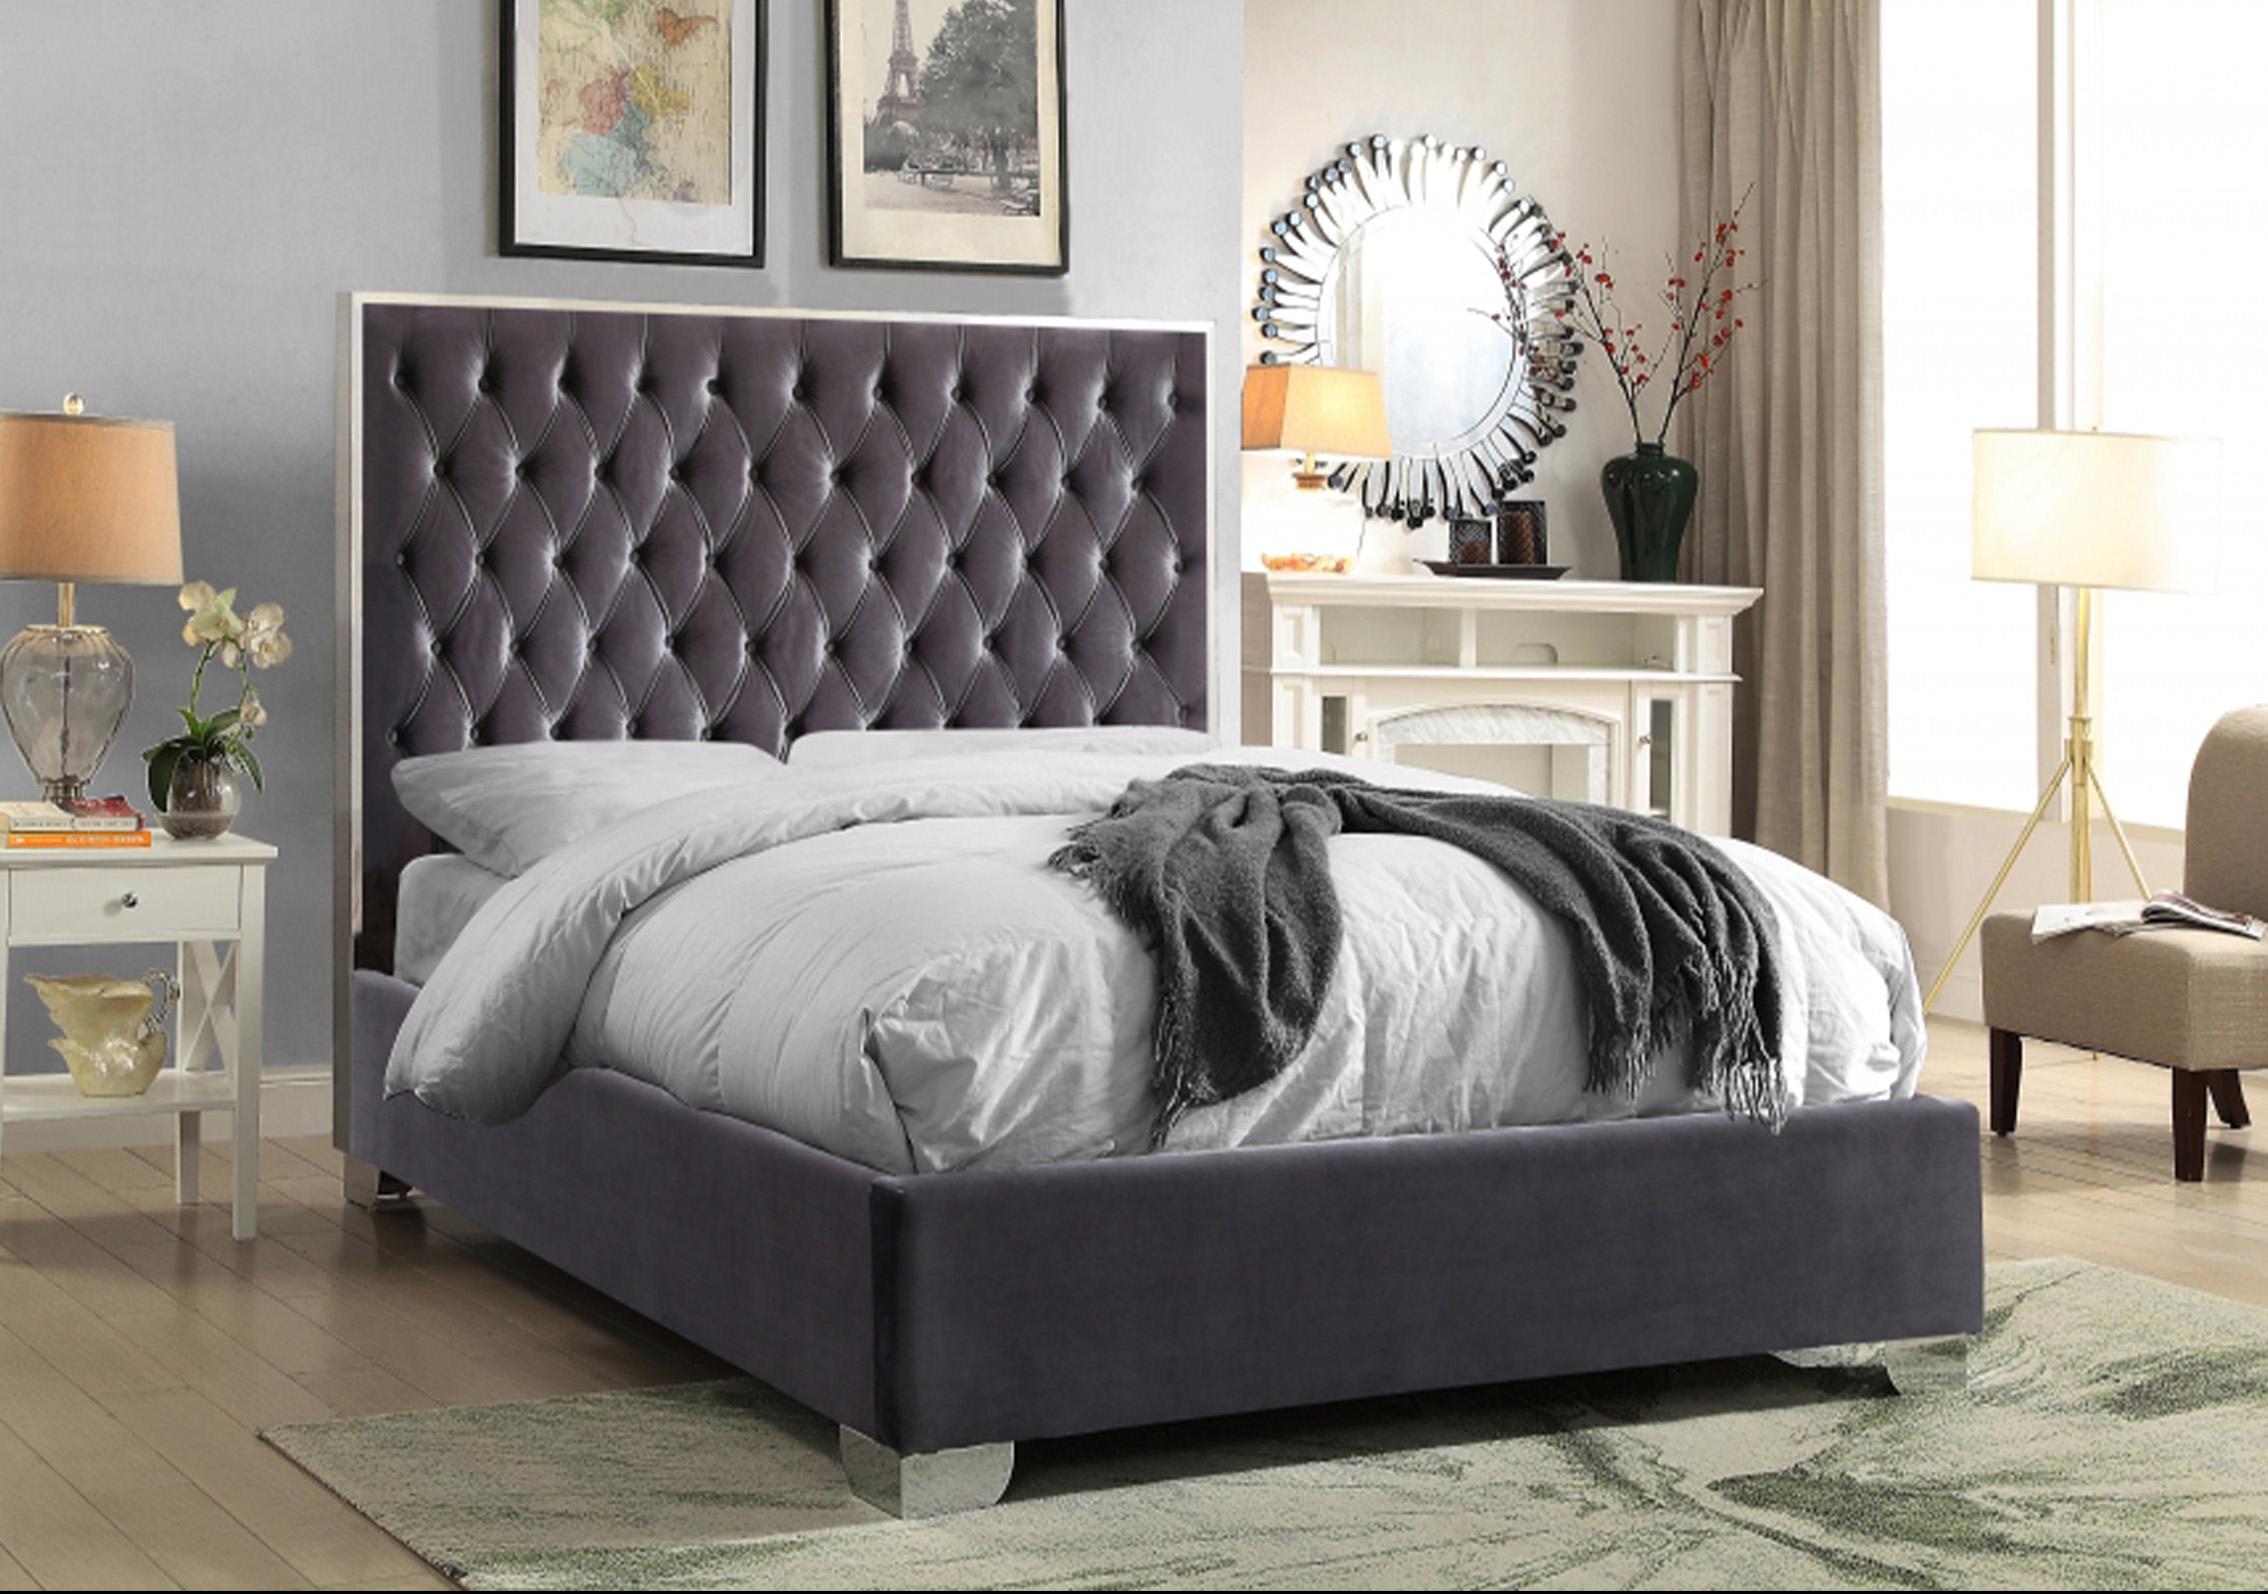 

    
Tufted Grey Velvet Full Platform Bed Lexi Meridian Contemporary Modern
